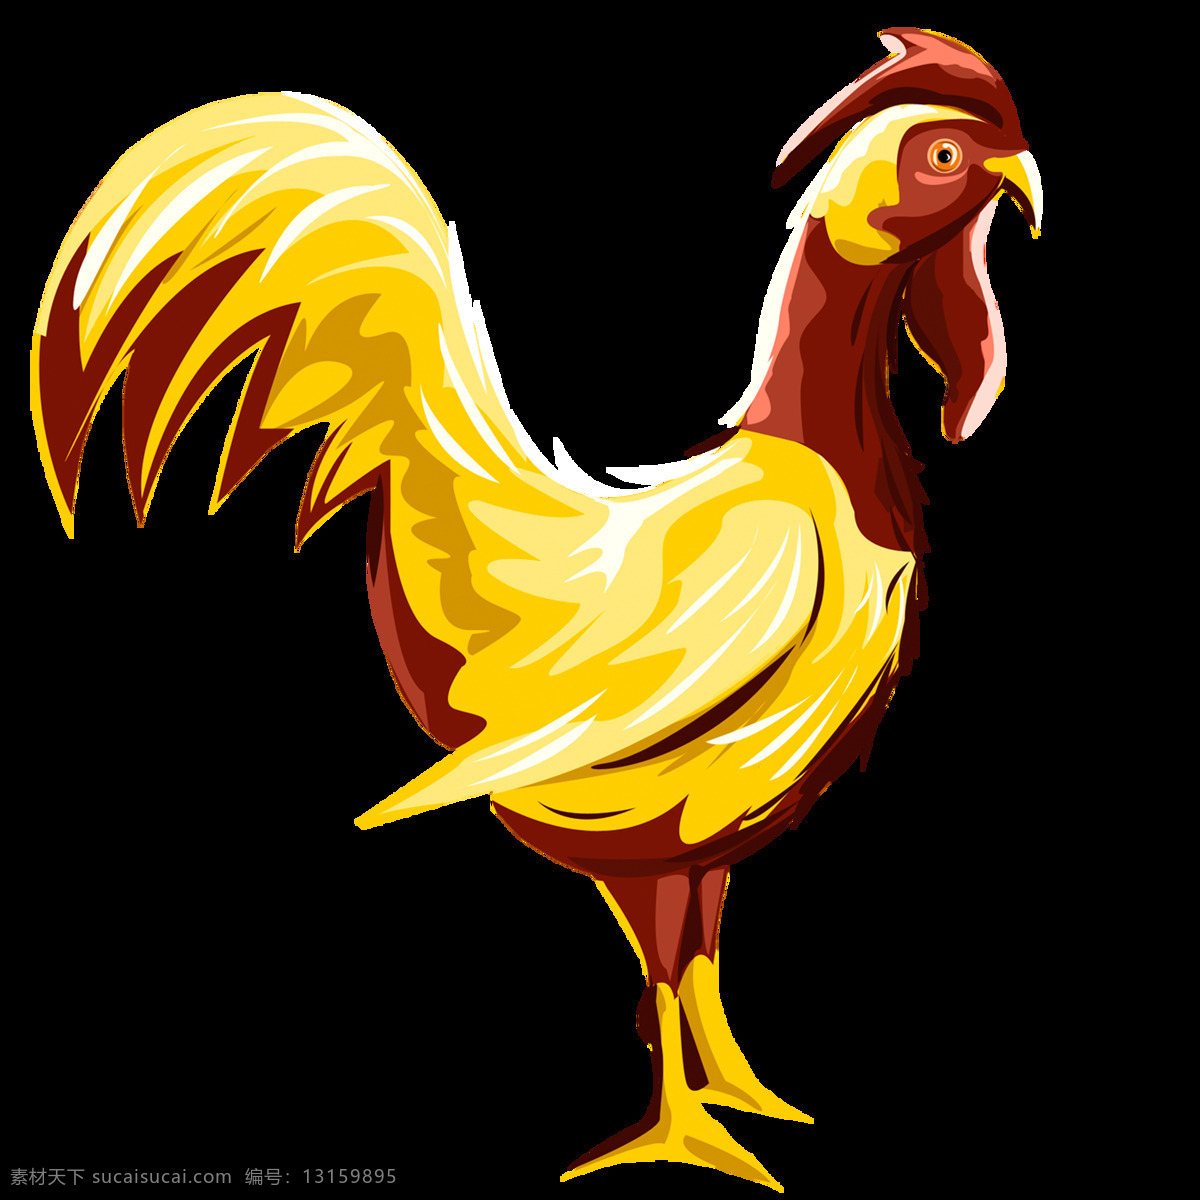 高清 唯美 鸡 绘画 可爱 卡通 创意 公鸡 形象